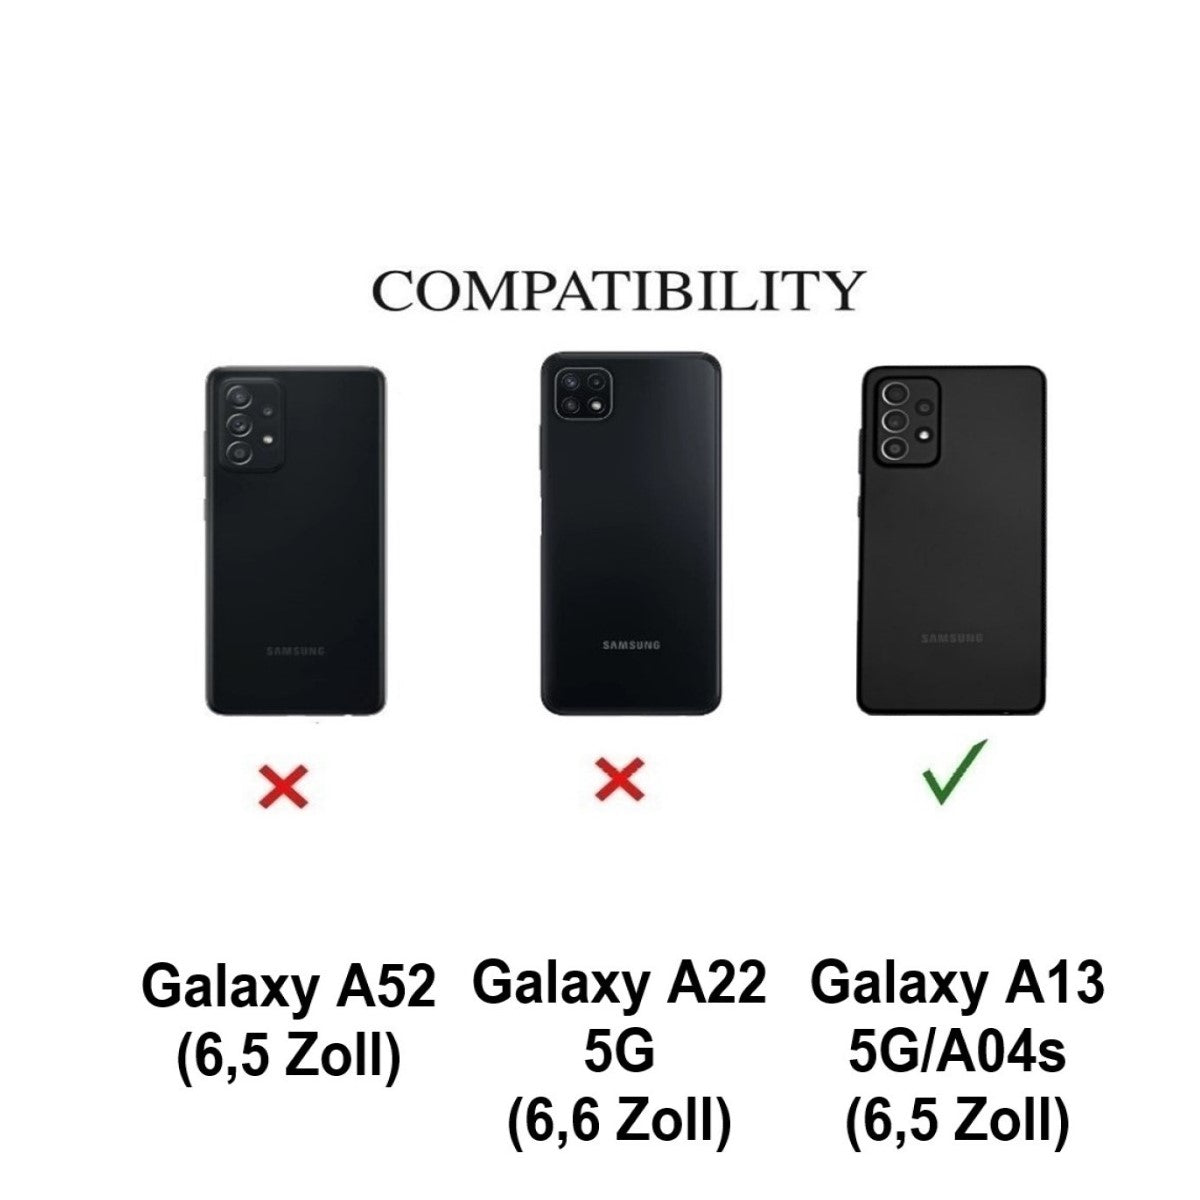 Hülle für Samsung Galaxy A13 5G/A04s Handyhülle Silikon Case Bumper Matt Grün